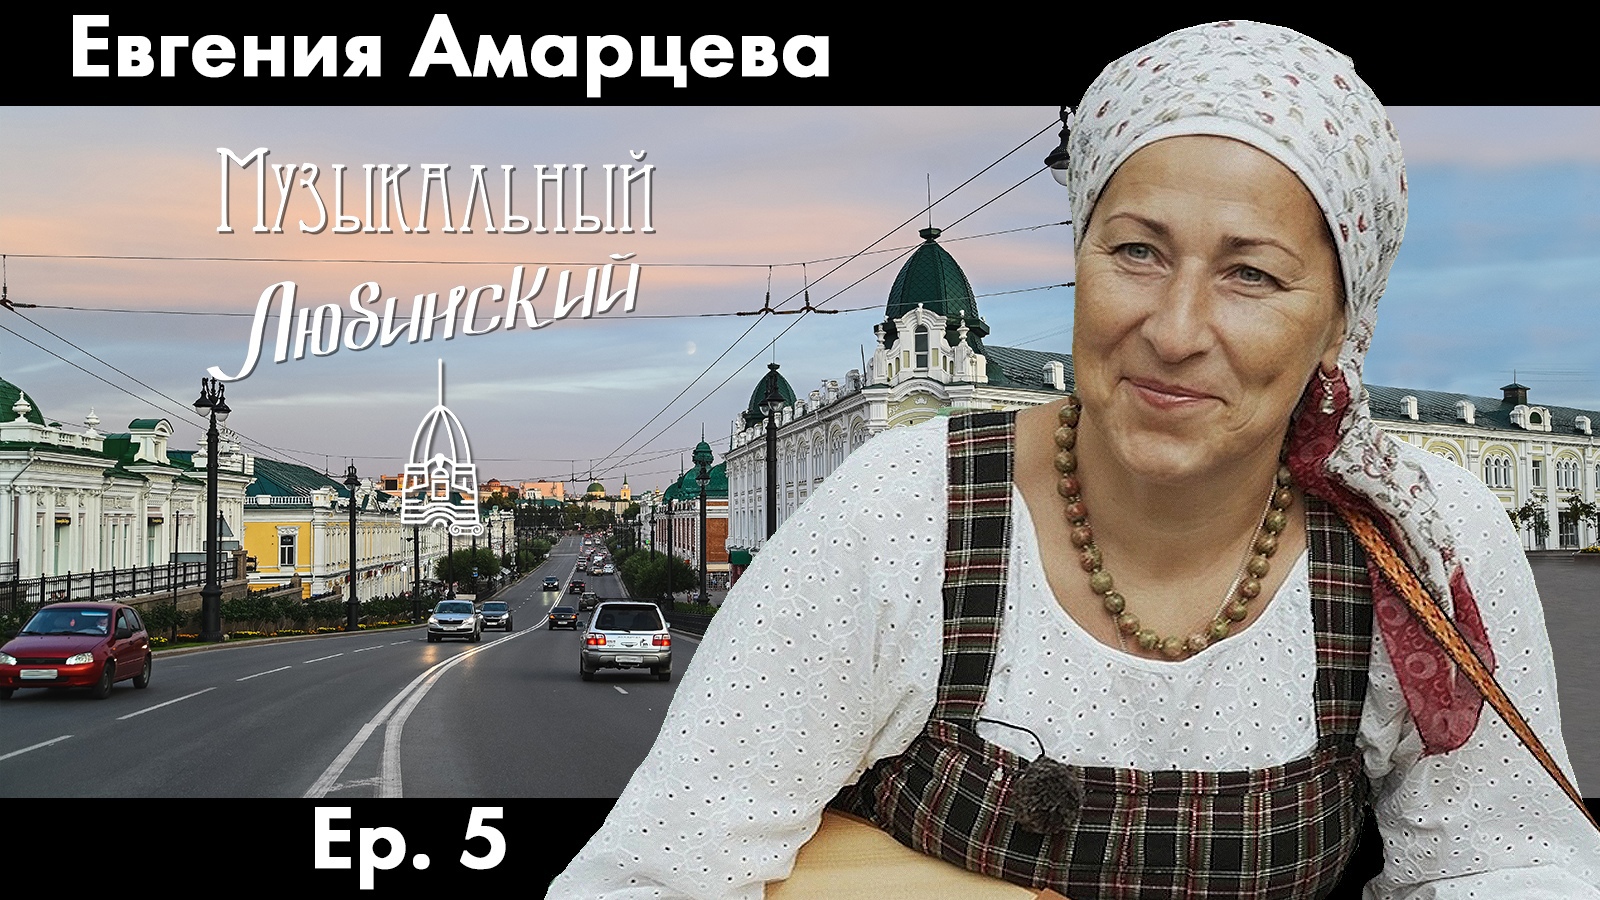 Евгения Амарцева | Ep. 5 | Музыкальный Любинский